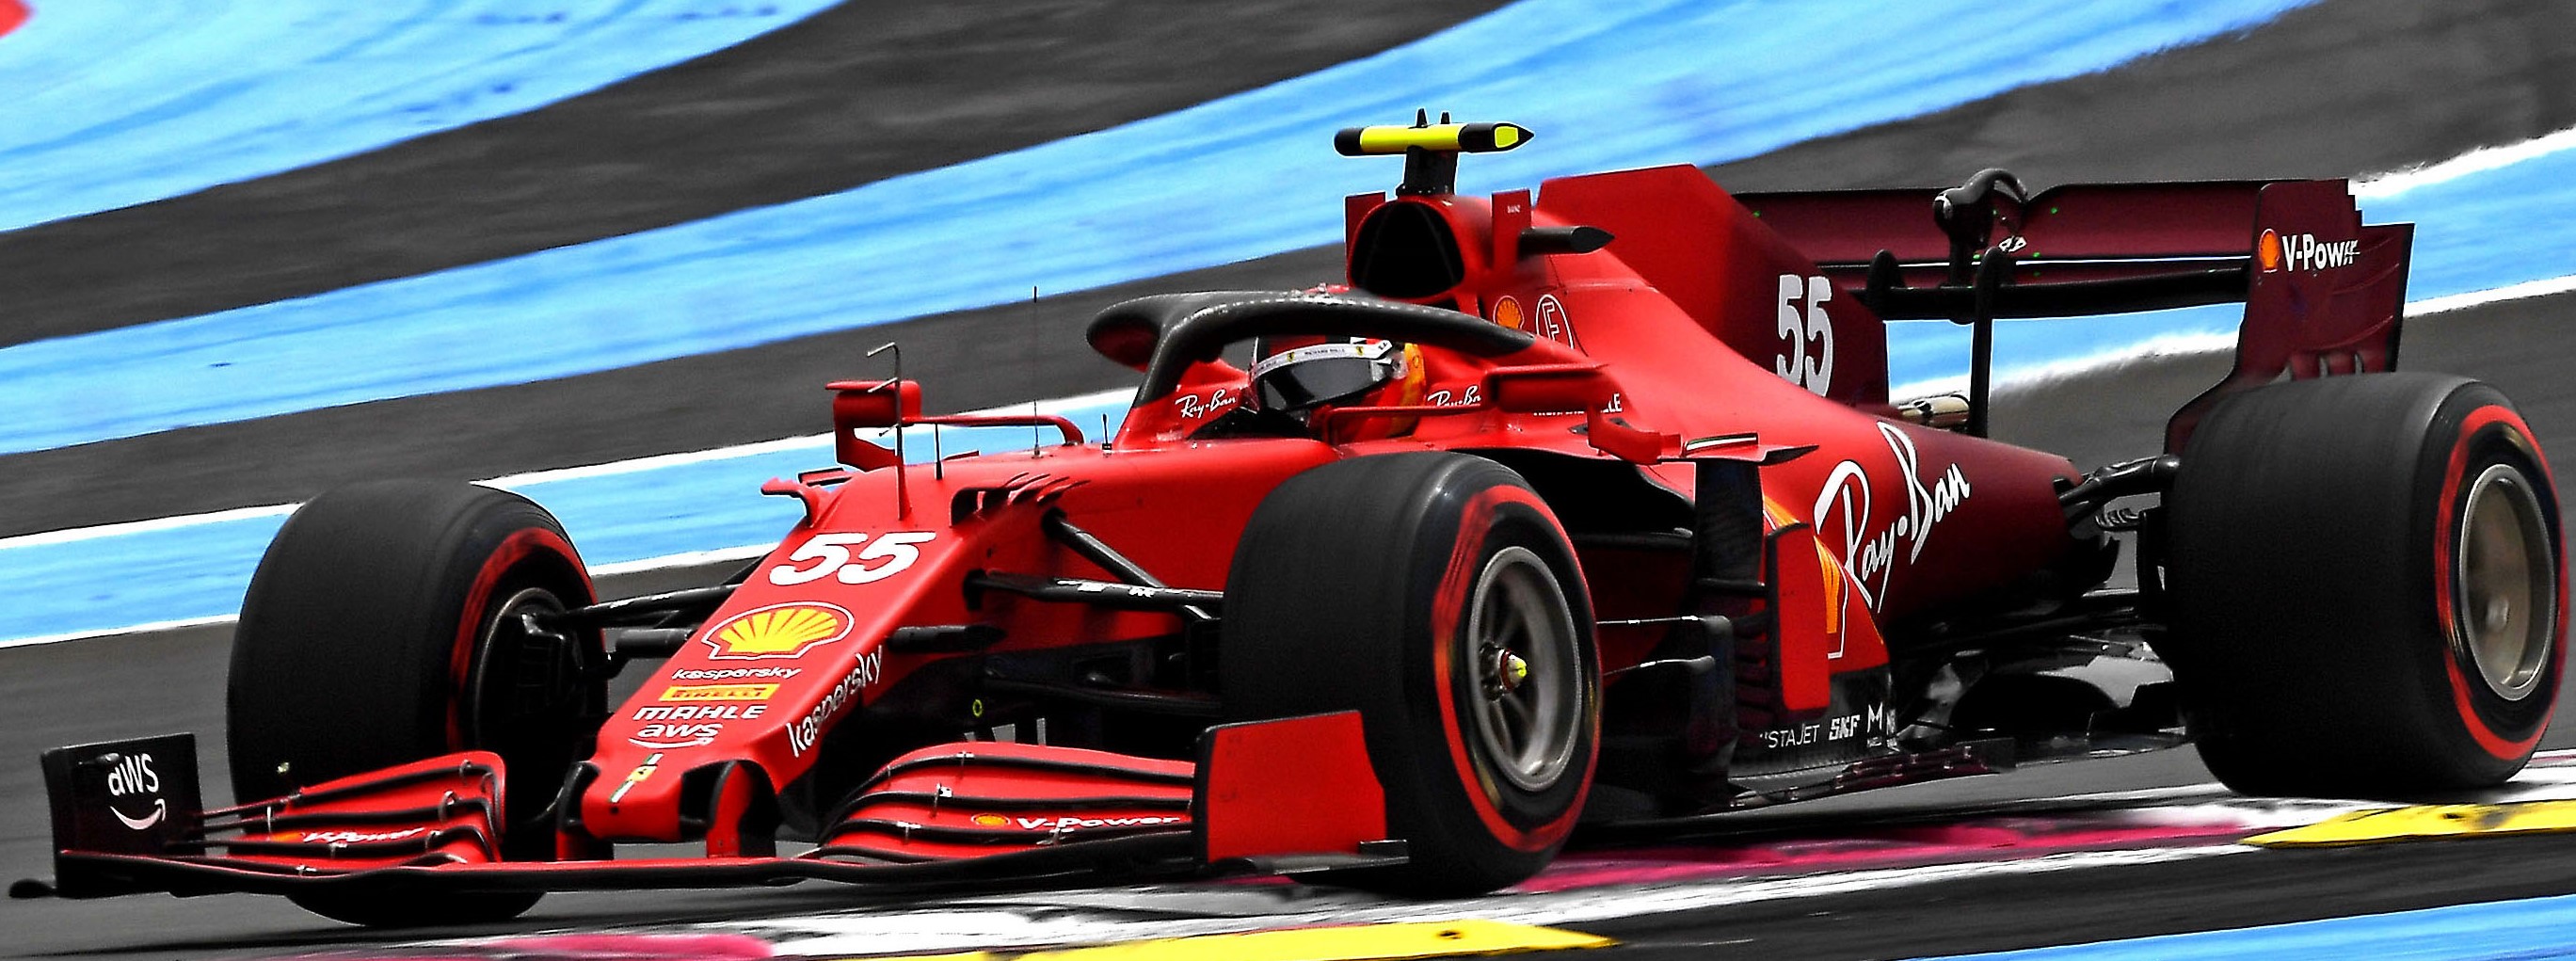 Formula 1 Gran Premio di Francia, Verstappen in pole position